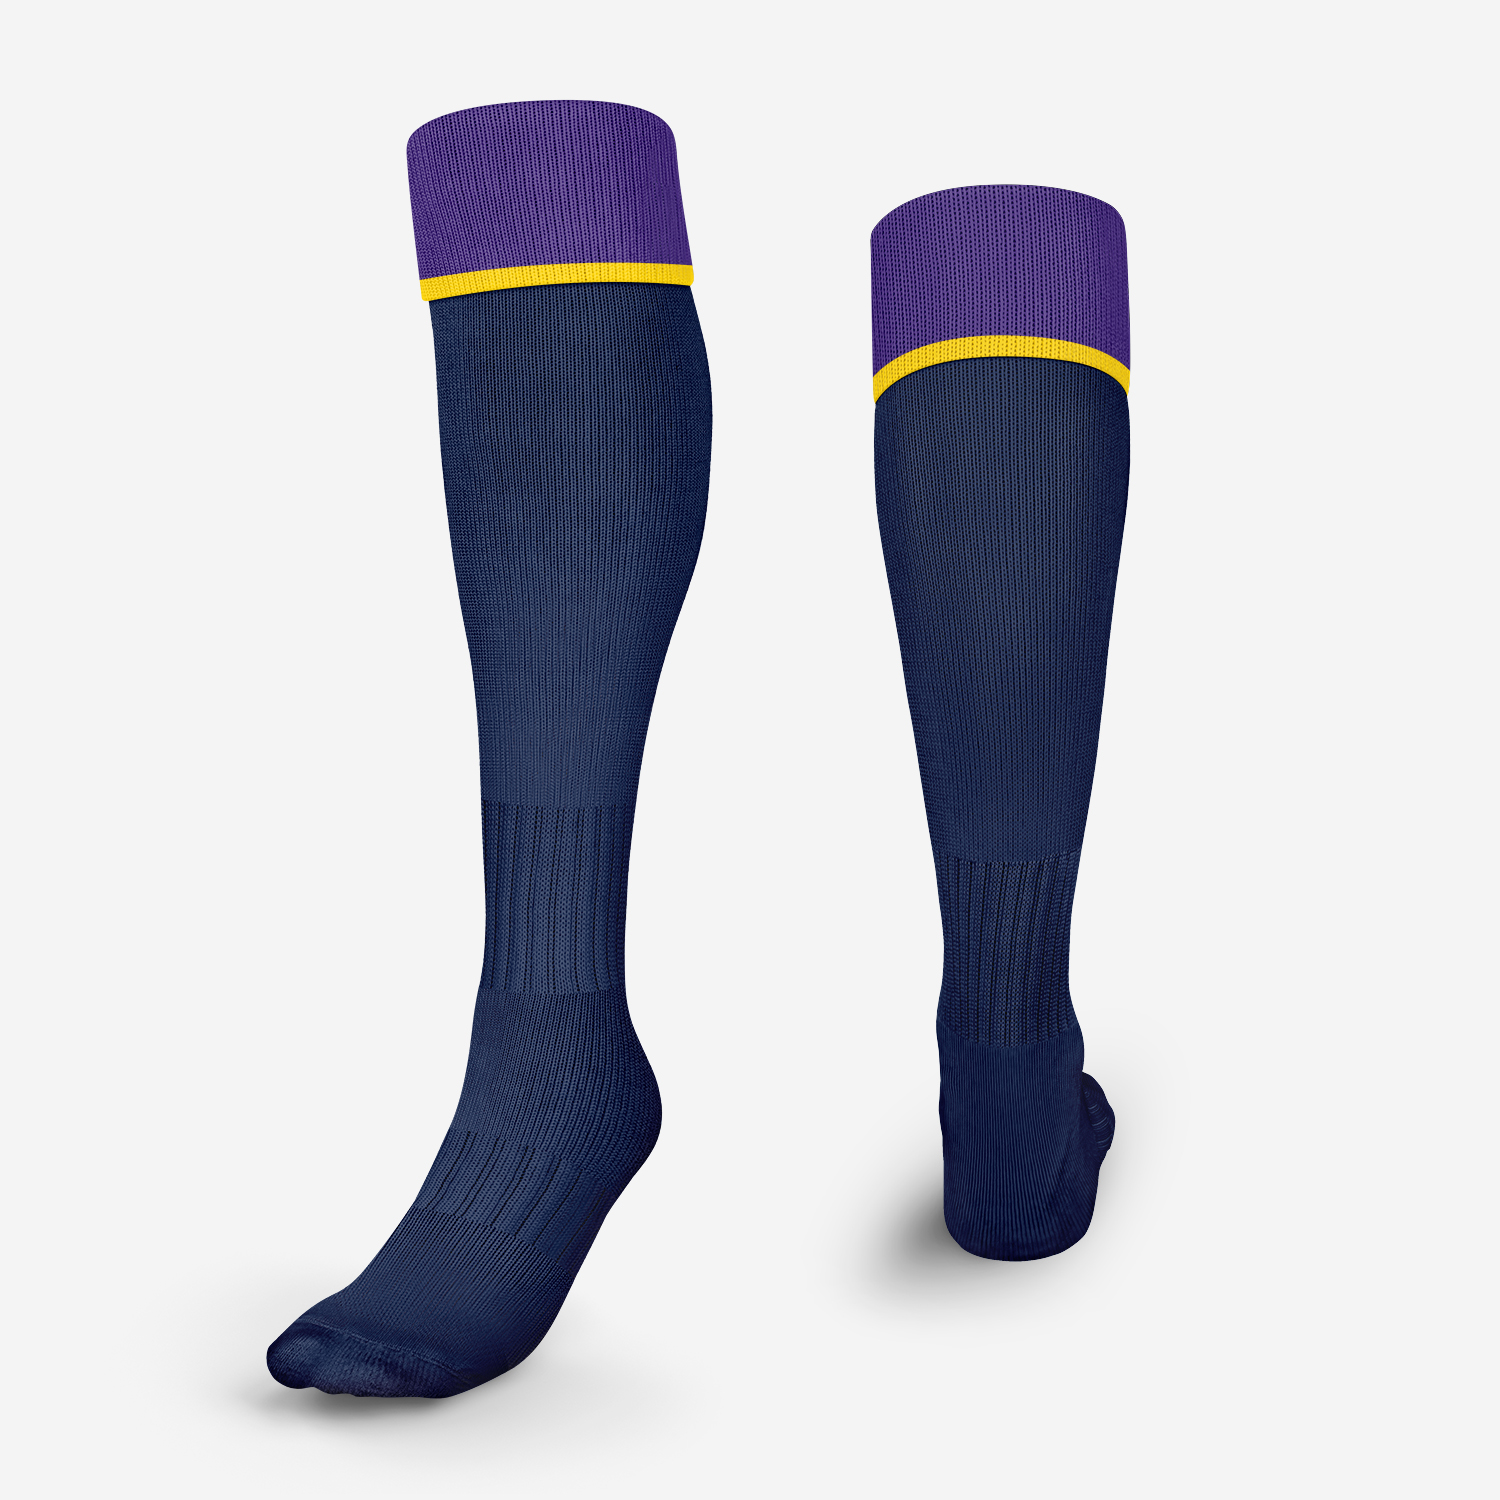 Melbourne storm adult socks